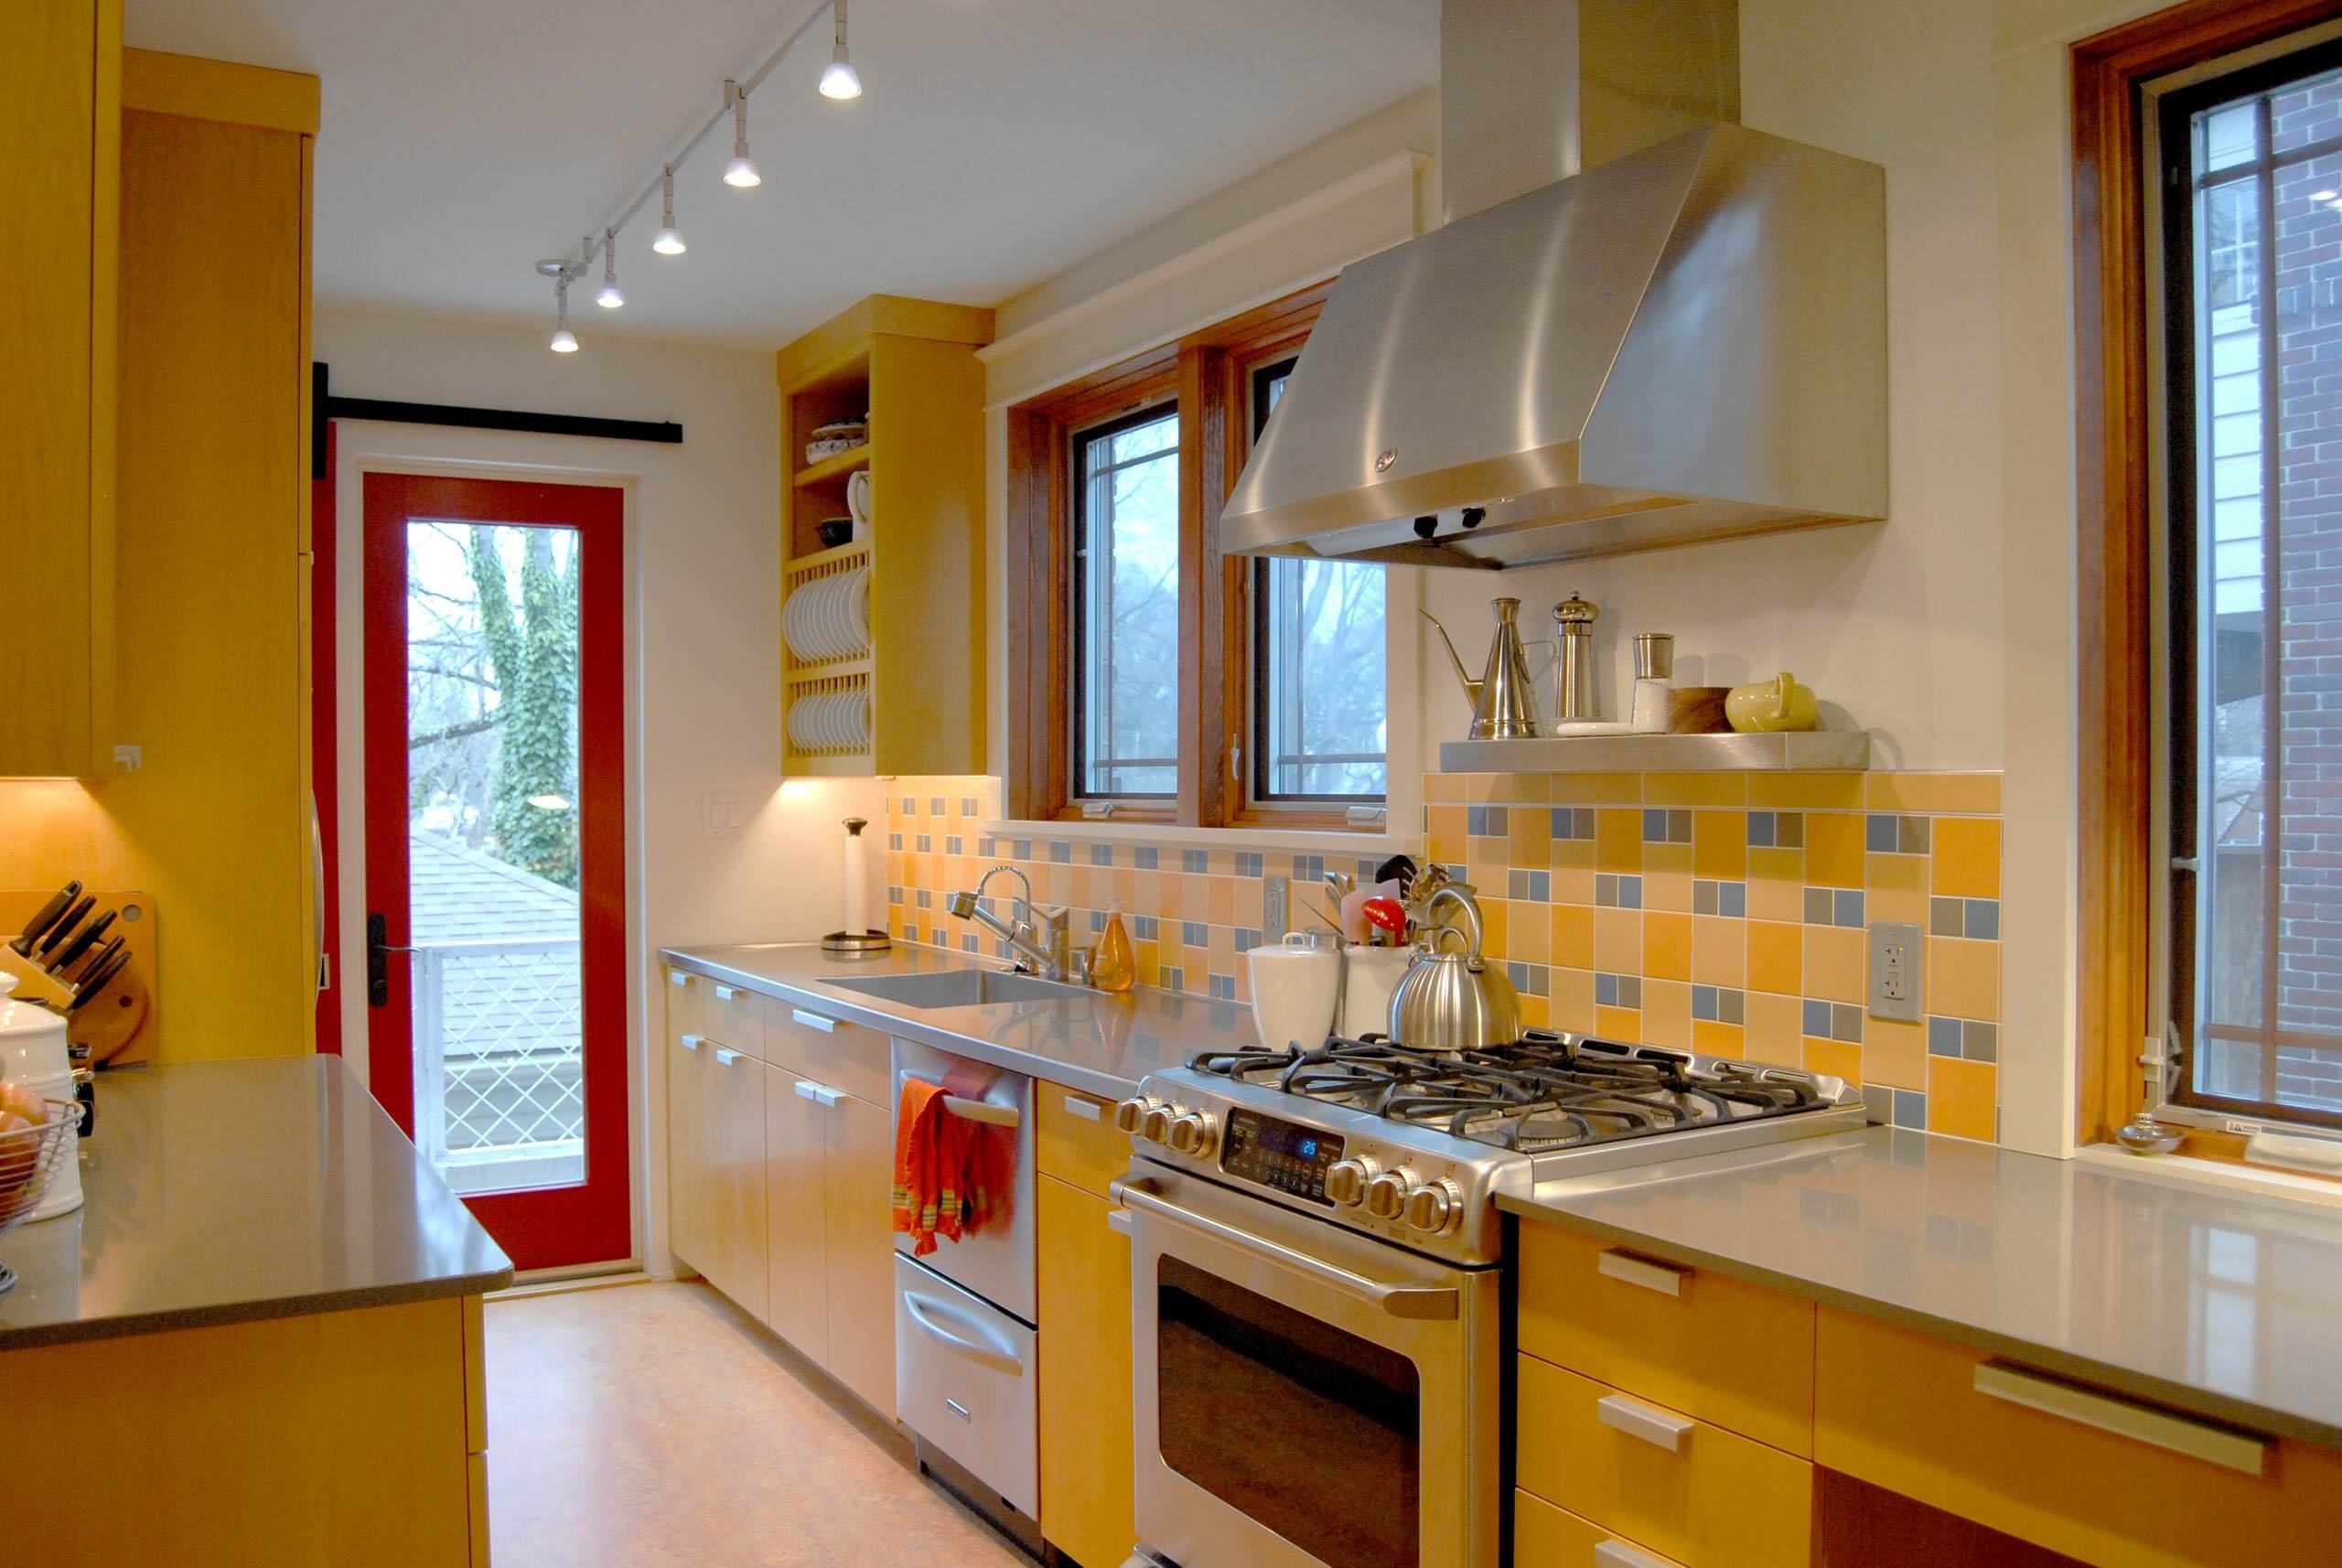 Лучший ремонт кухни. Желтая кухня в интерьере. Кухня в желтом цвете. Кухни цветовые решения. Желтые стены на кухне.